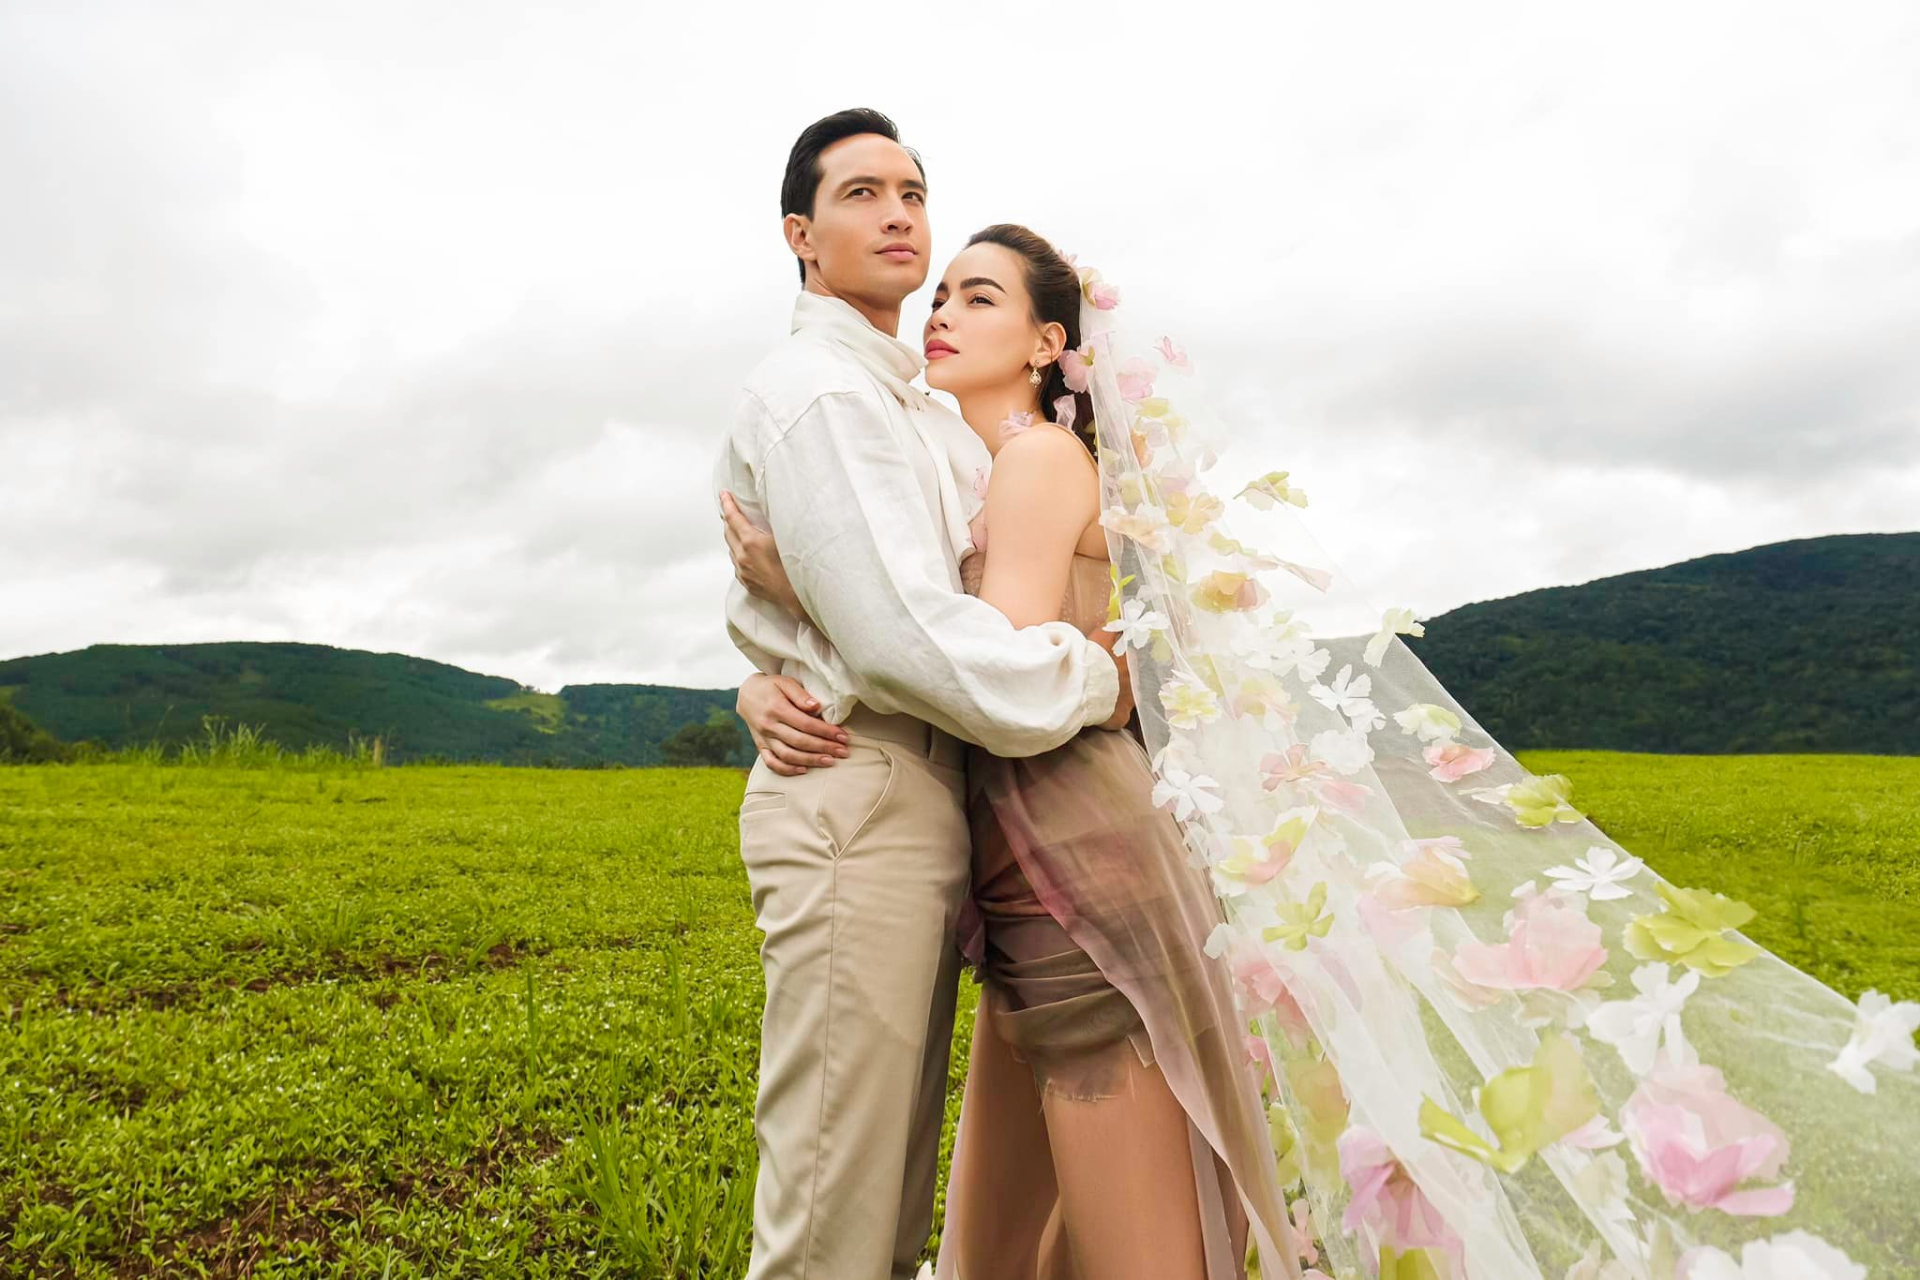 Hồ Ngọc Hà bất ngờ chia sẻ không muốn làm đám cưới với Kim Lý dù đã có 2 con chung - ảnh 1